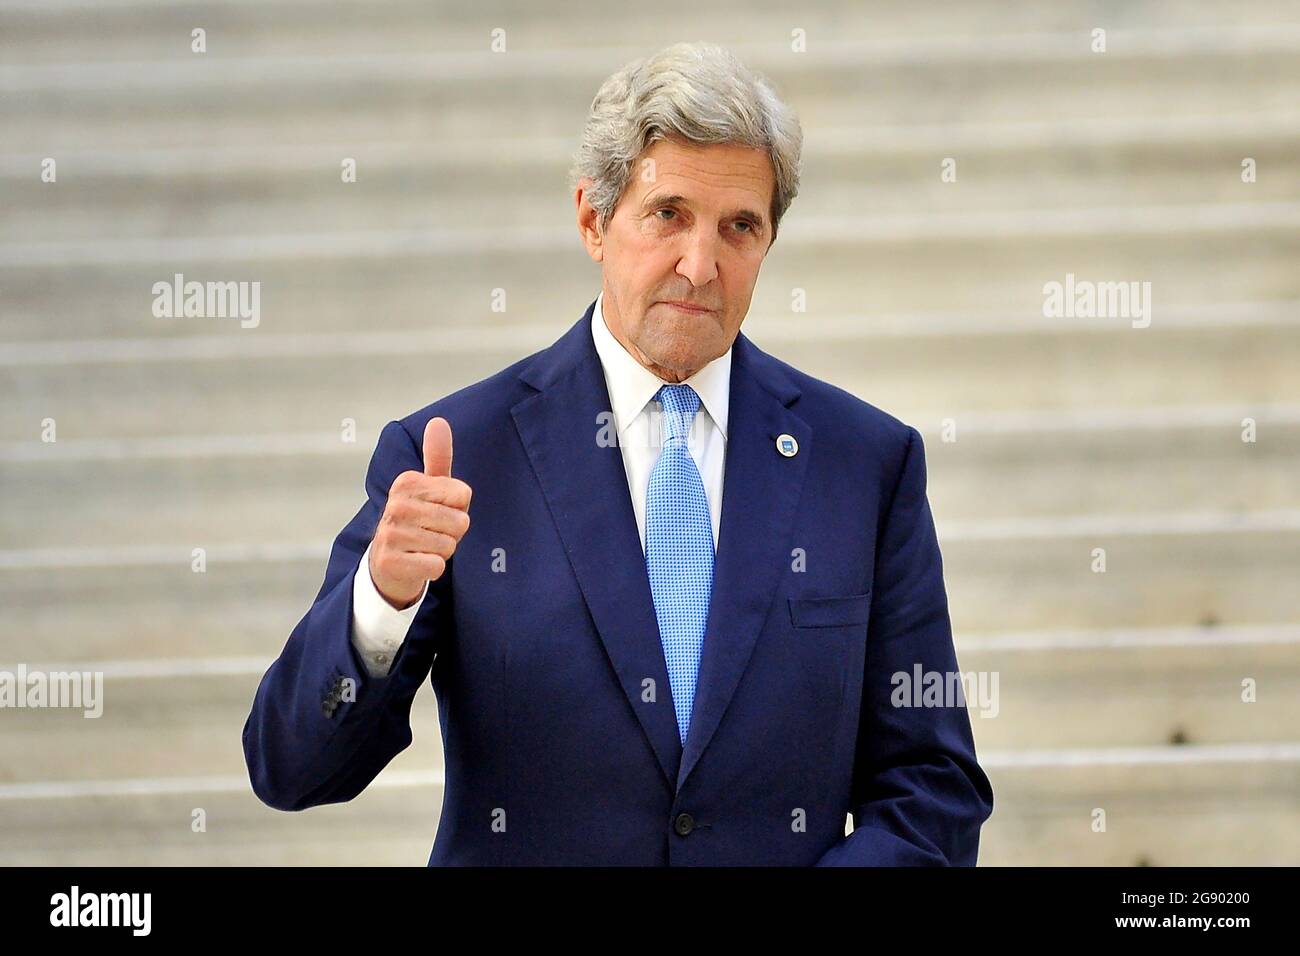 John Kerry è un politico statunitense ed ex militare, attualmente inviato speciale del presidente per il clima, che si è tenuto a Napoli dal 22 al 23 luglio. Napoli, 23 luglio. (Foto di Vincenzo Izzo/Sipa USA) Foto Stock